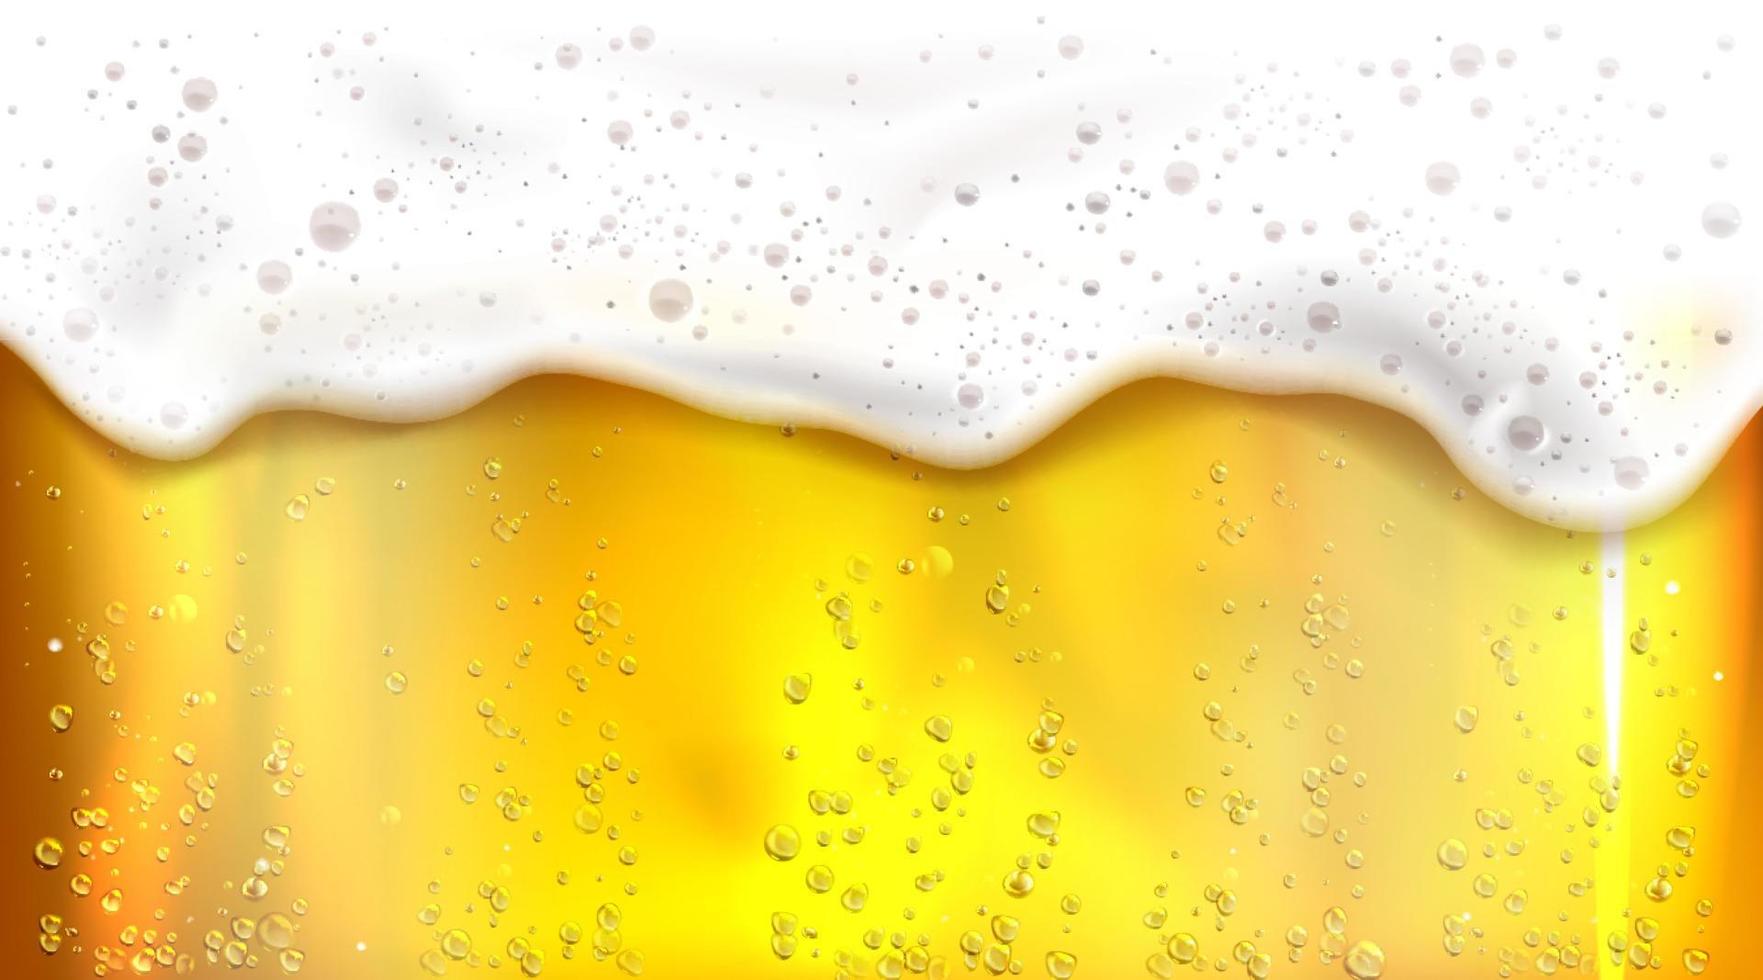 öl med bubblor och skum bakgrund vektor